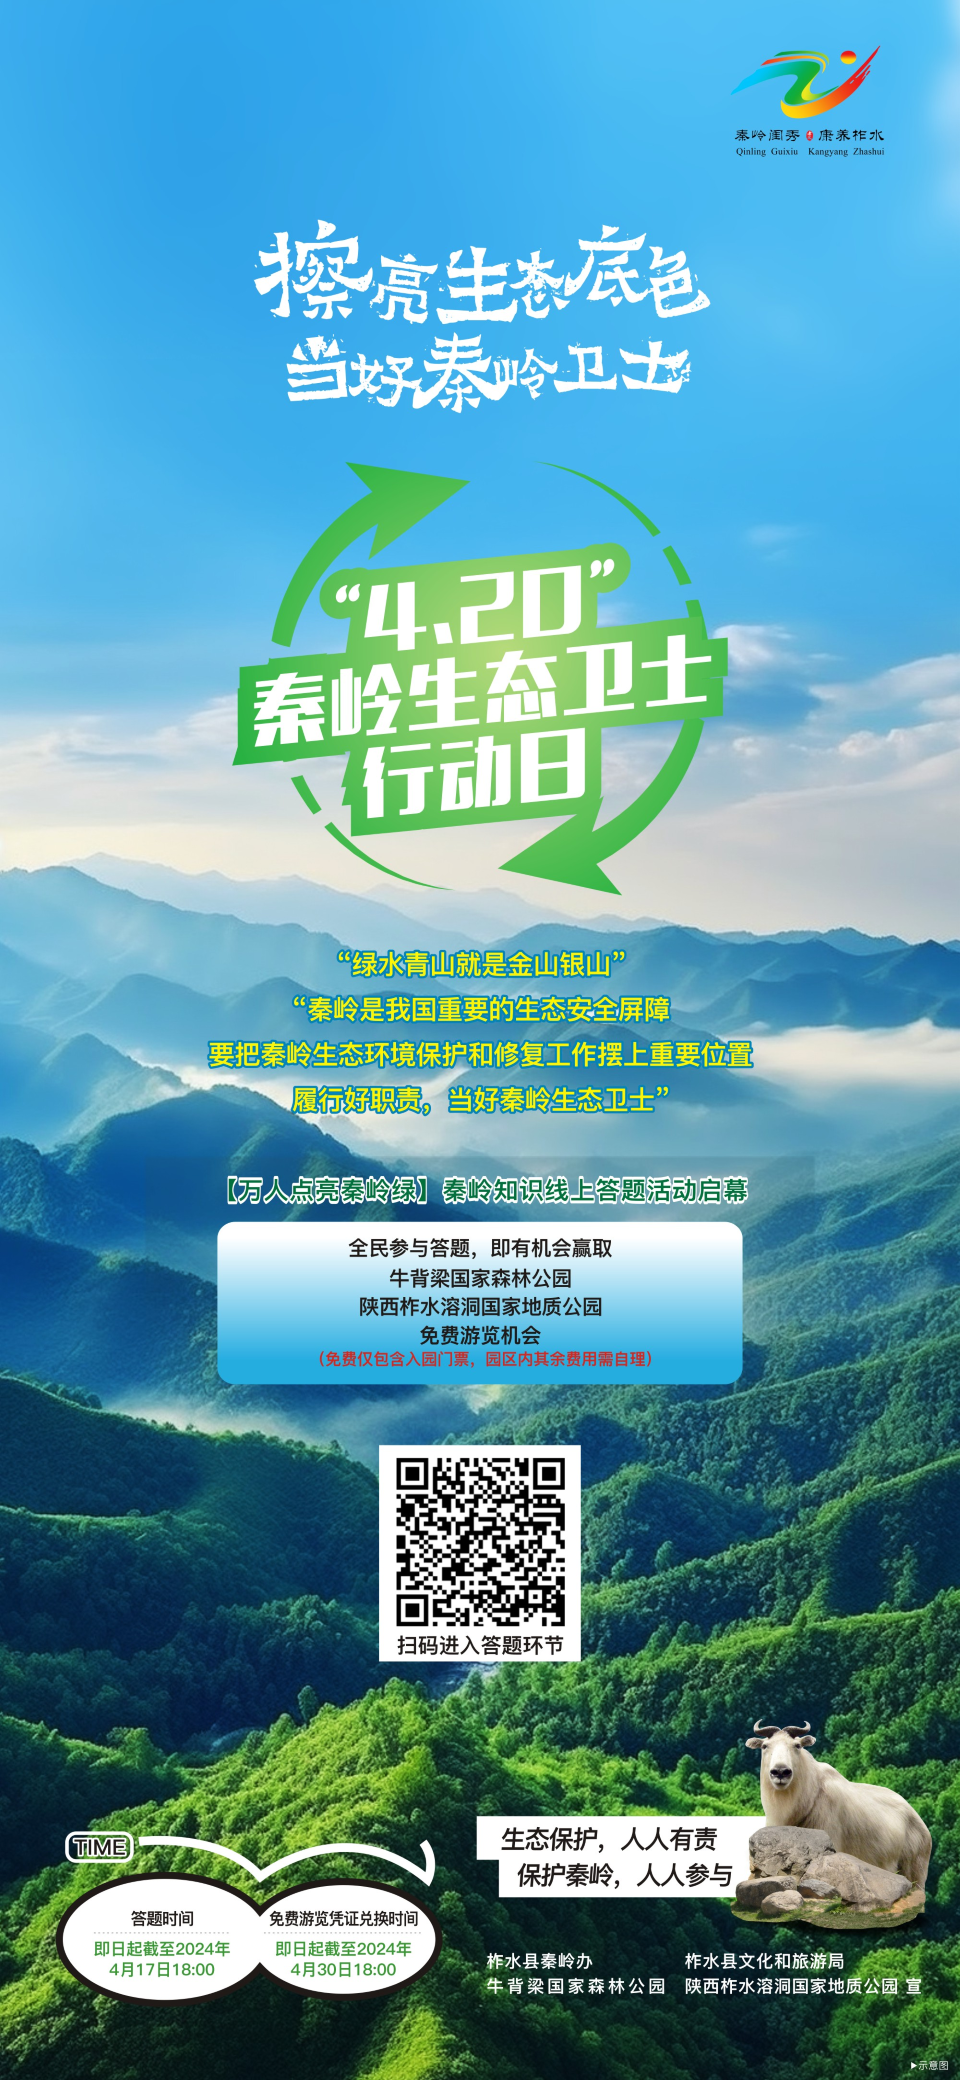 2024年“4.20”秦岭生态卫士行动日活动启动